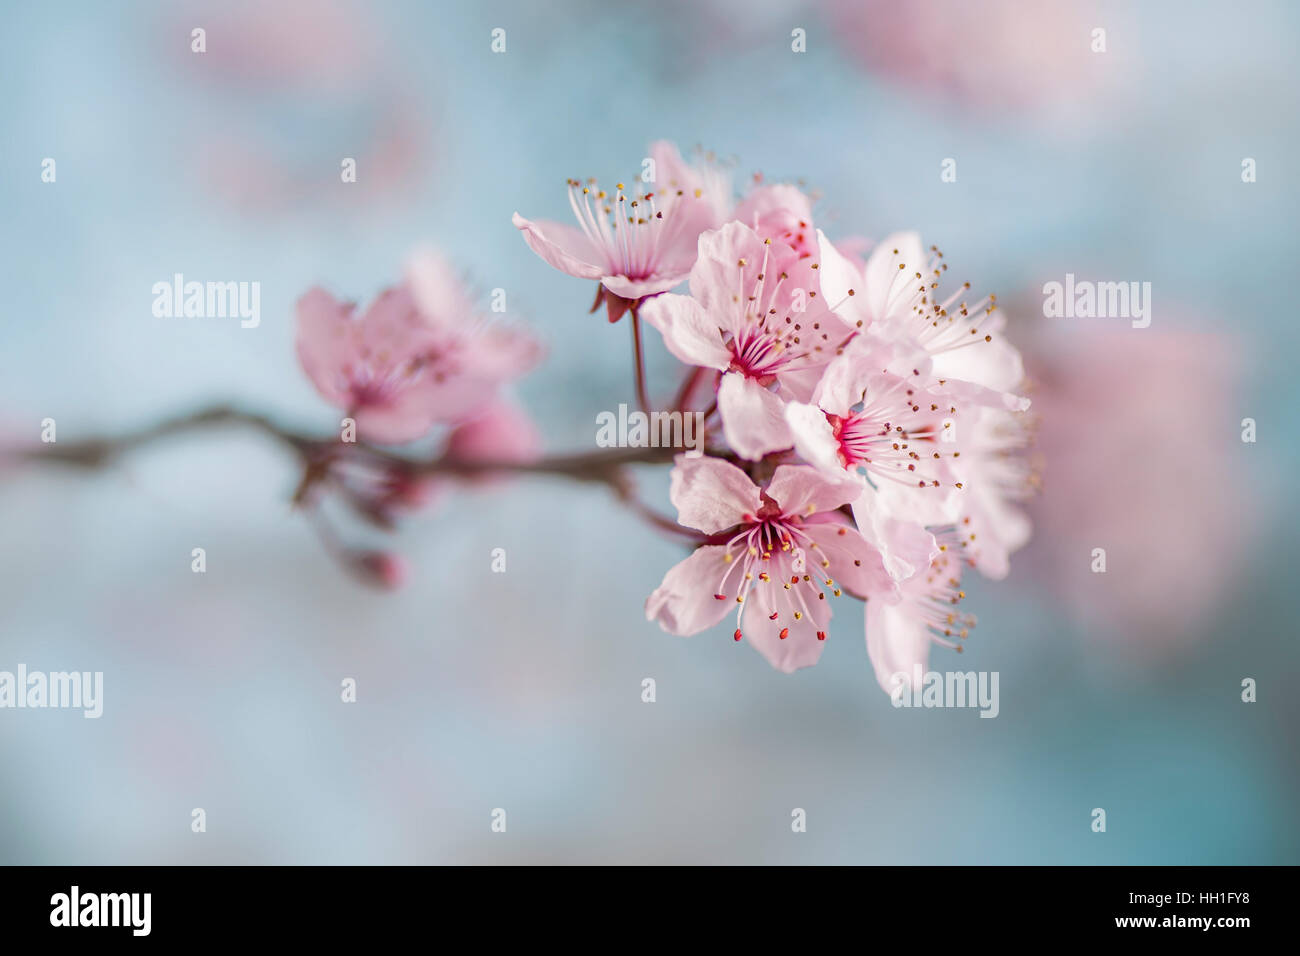 La belle fleur de printemps rose de la Black Cherry Plum Tree également connu sous le nom de Prunus cerasifera Nigra, prises contre un ciel bleu et un fond Banque D'Images